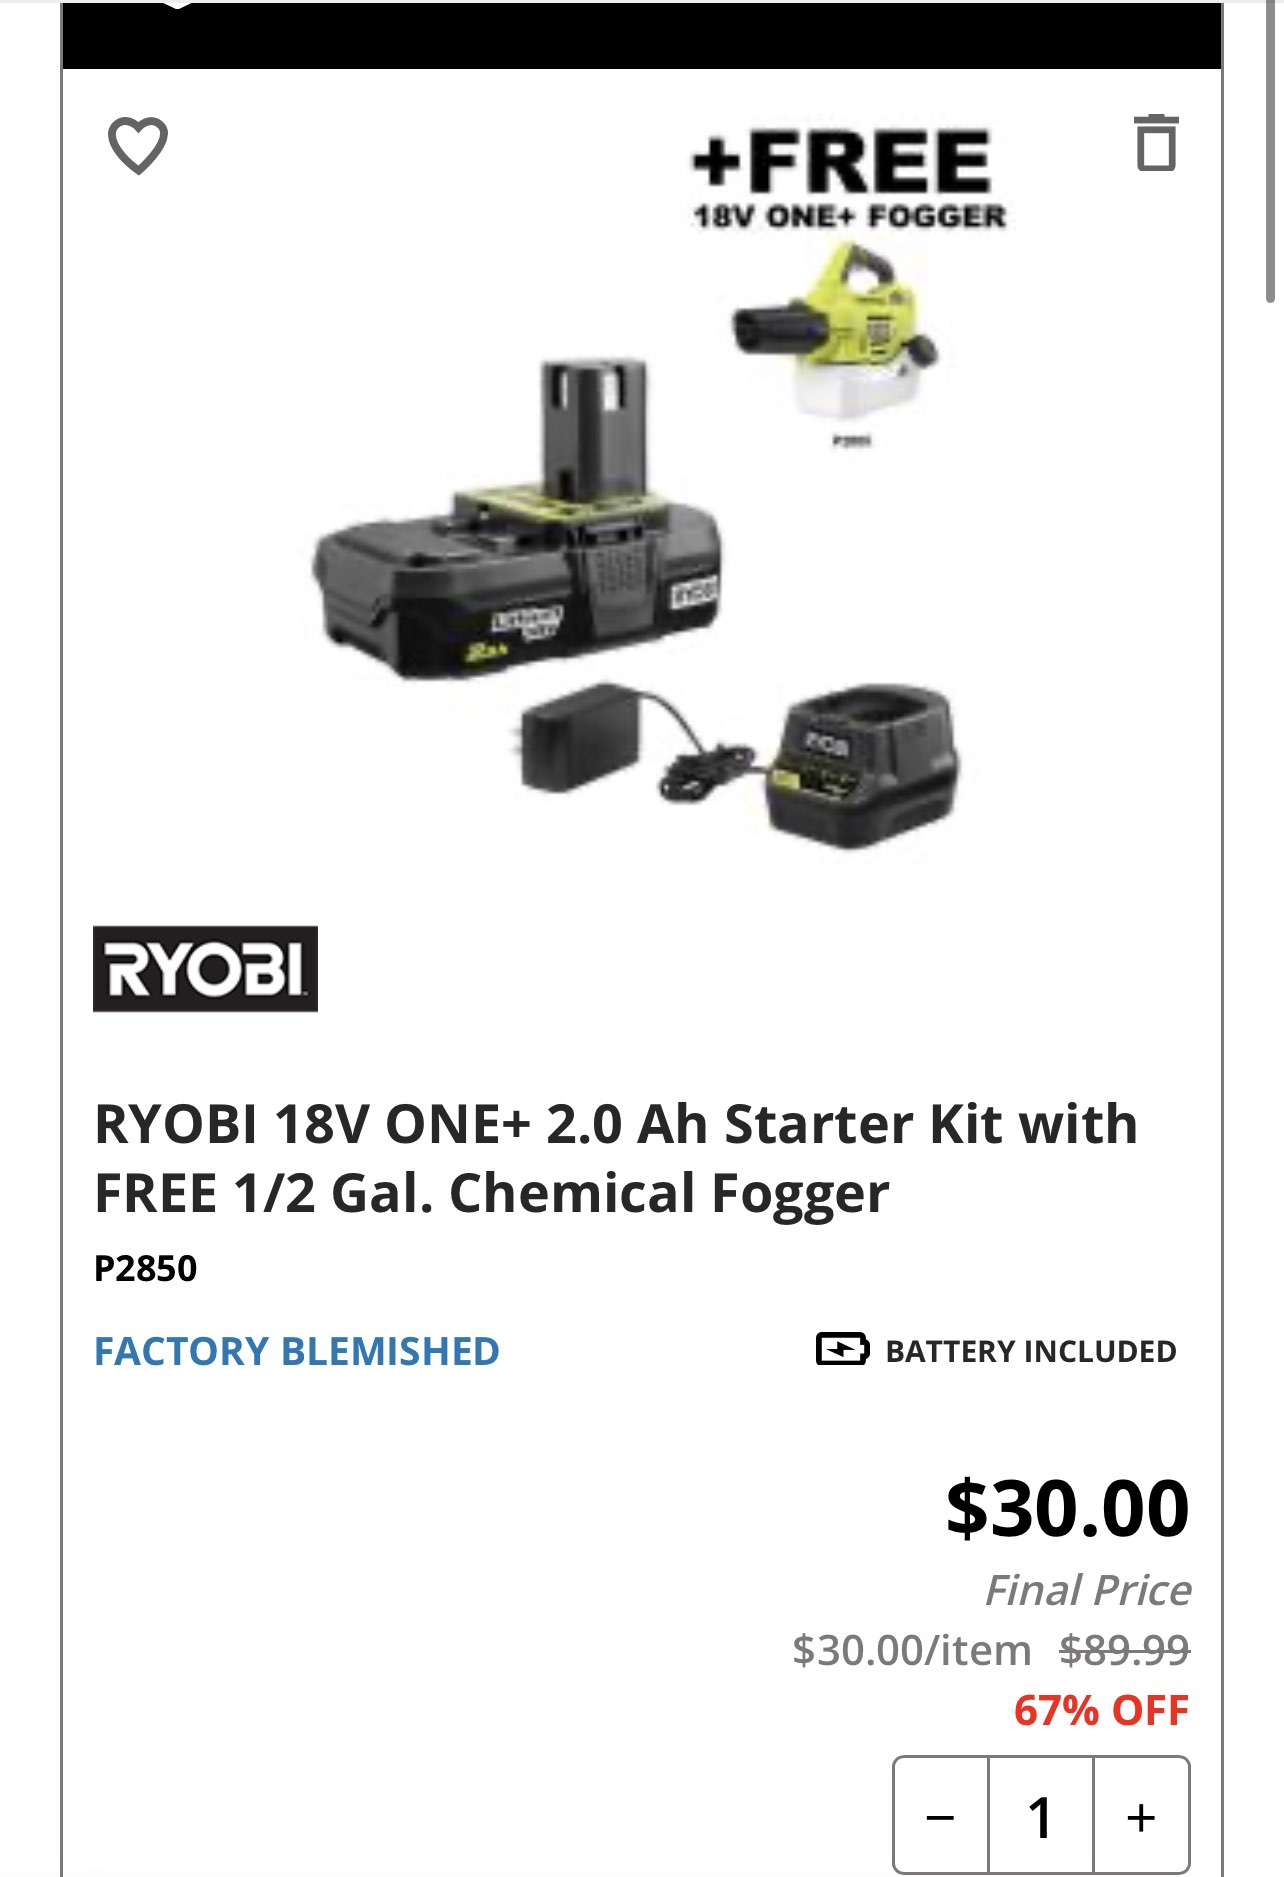 RYOBI 18V ONE+ 2.0 Ah Starter Kit with FREE 1/2 Gal. Chemical Fogger